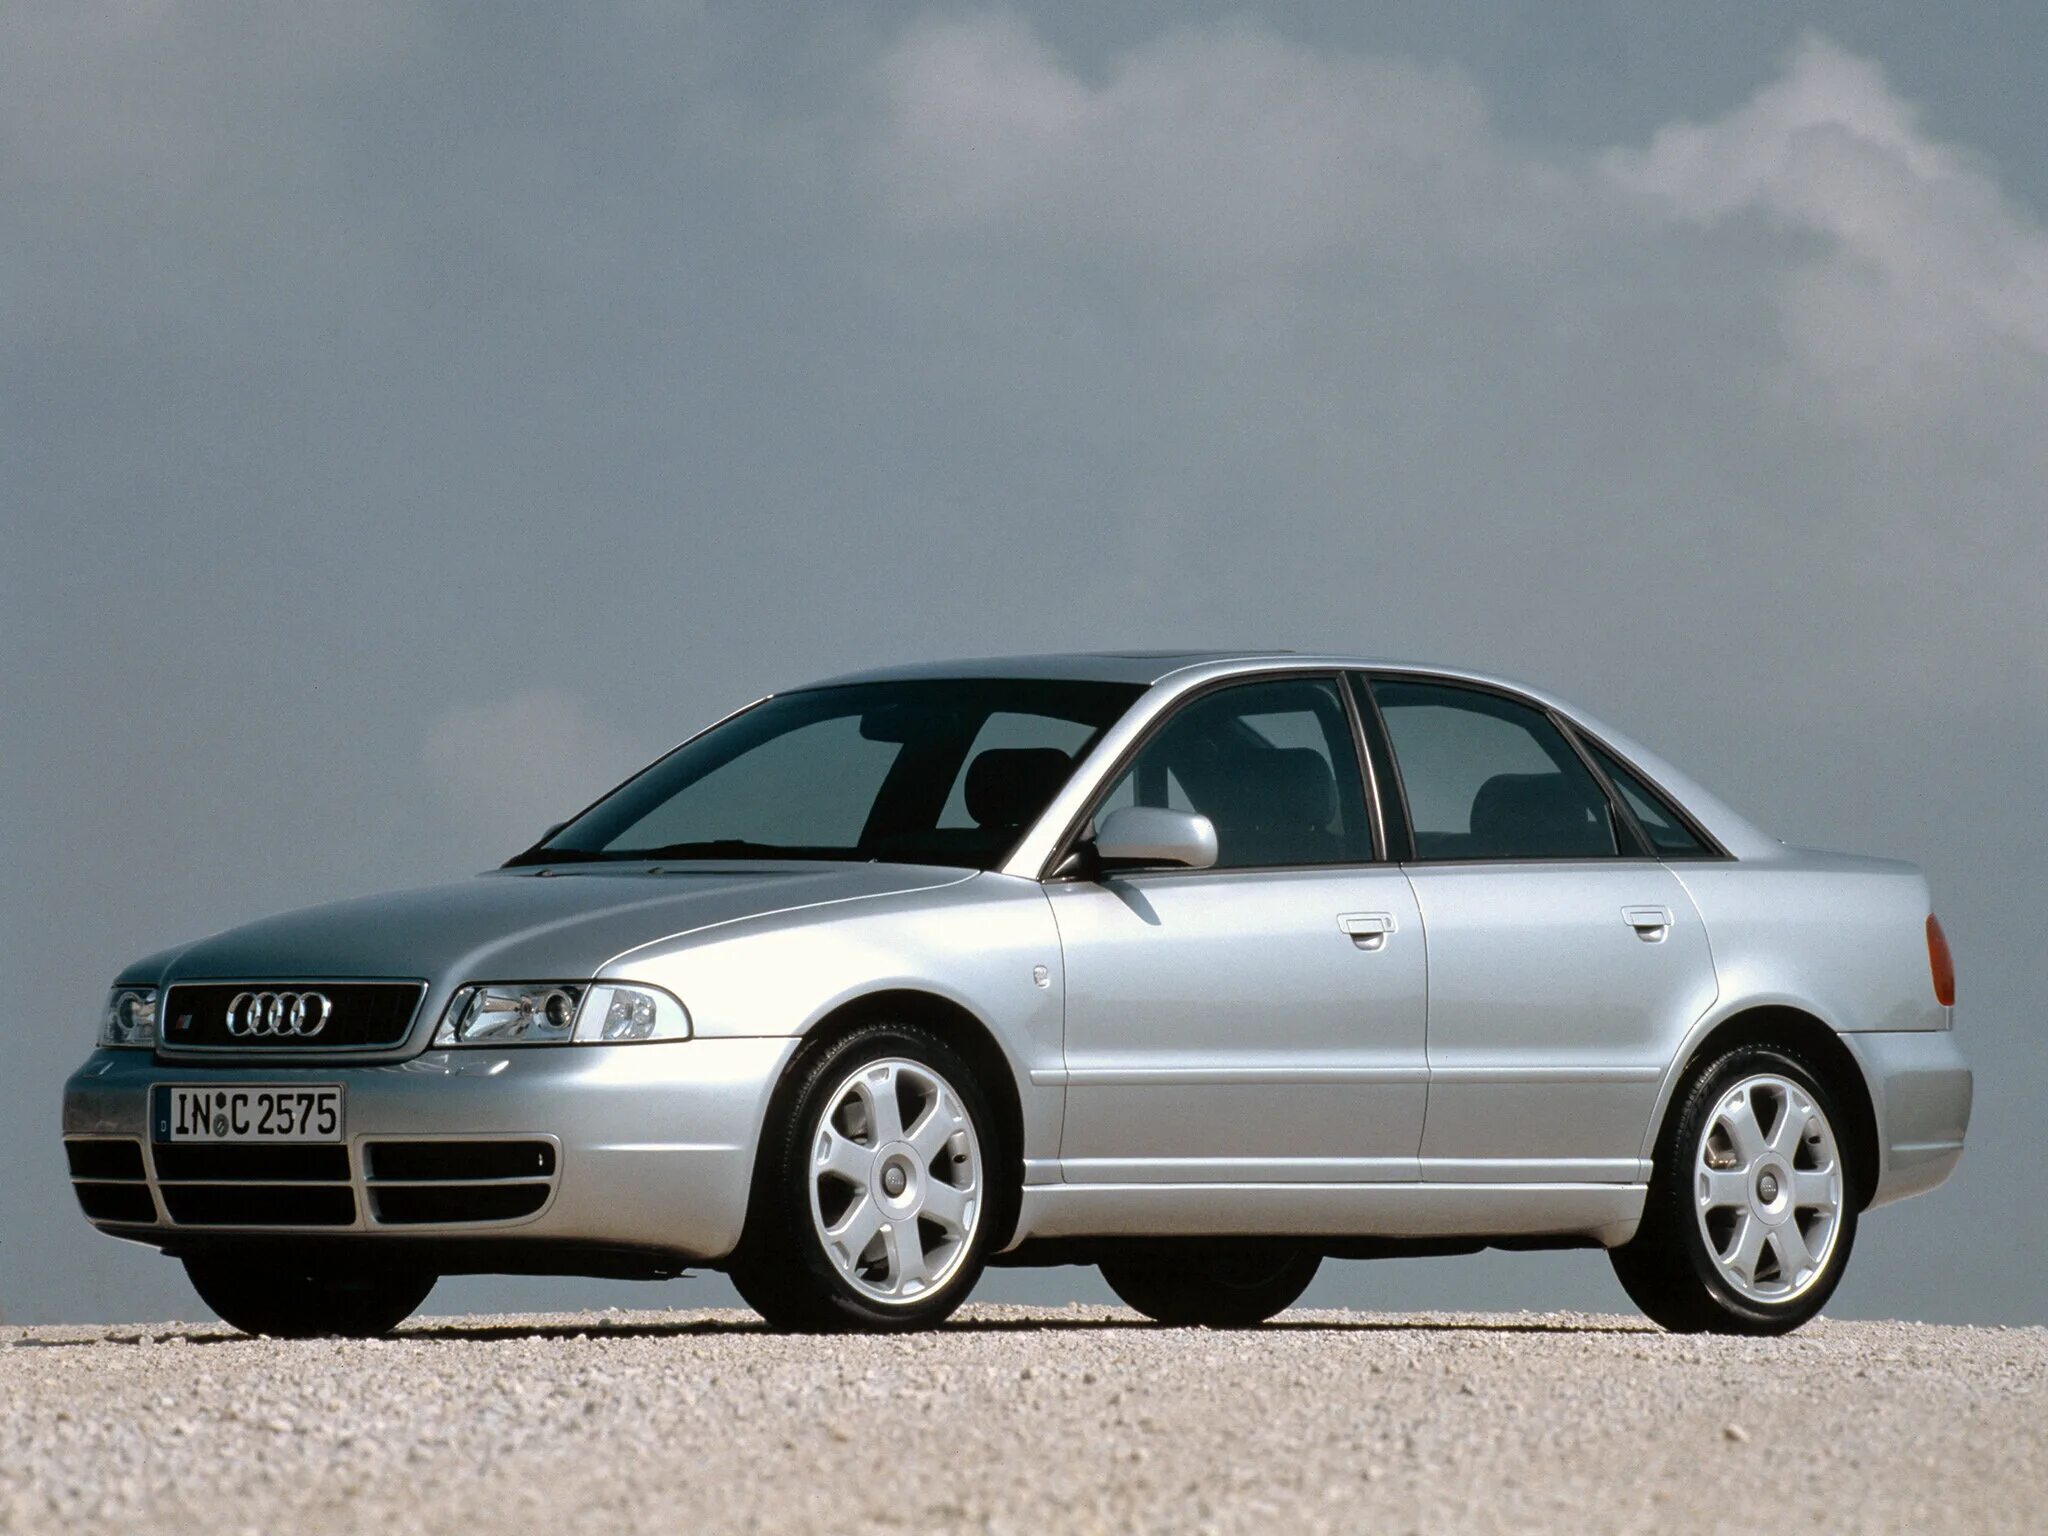 B 5 b2 7. Audi s4 b5. Ауди s4 1997. Audi a4 b5 s4. Audi s4 b5 sedan.